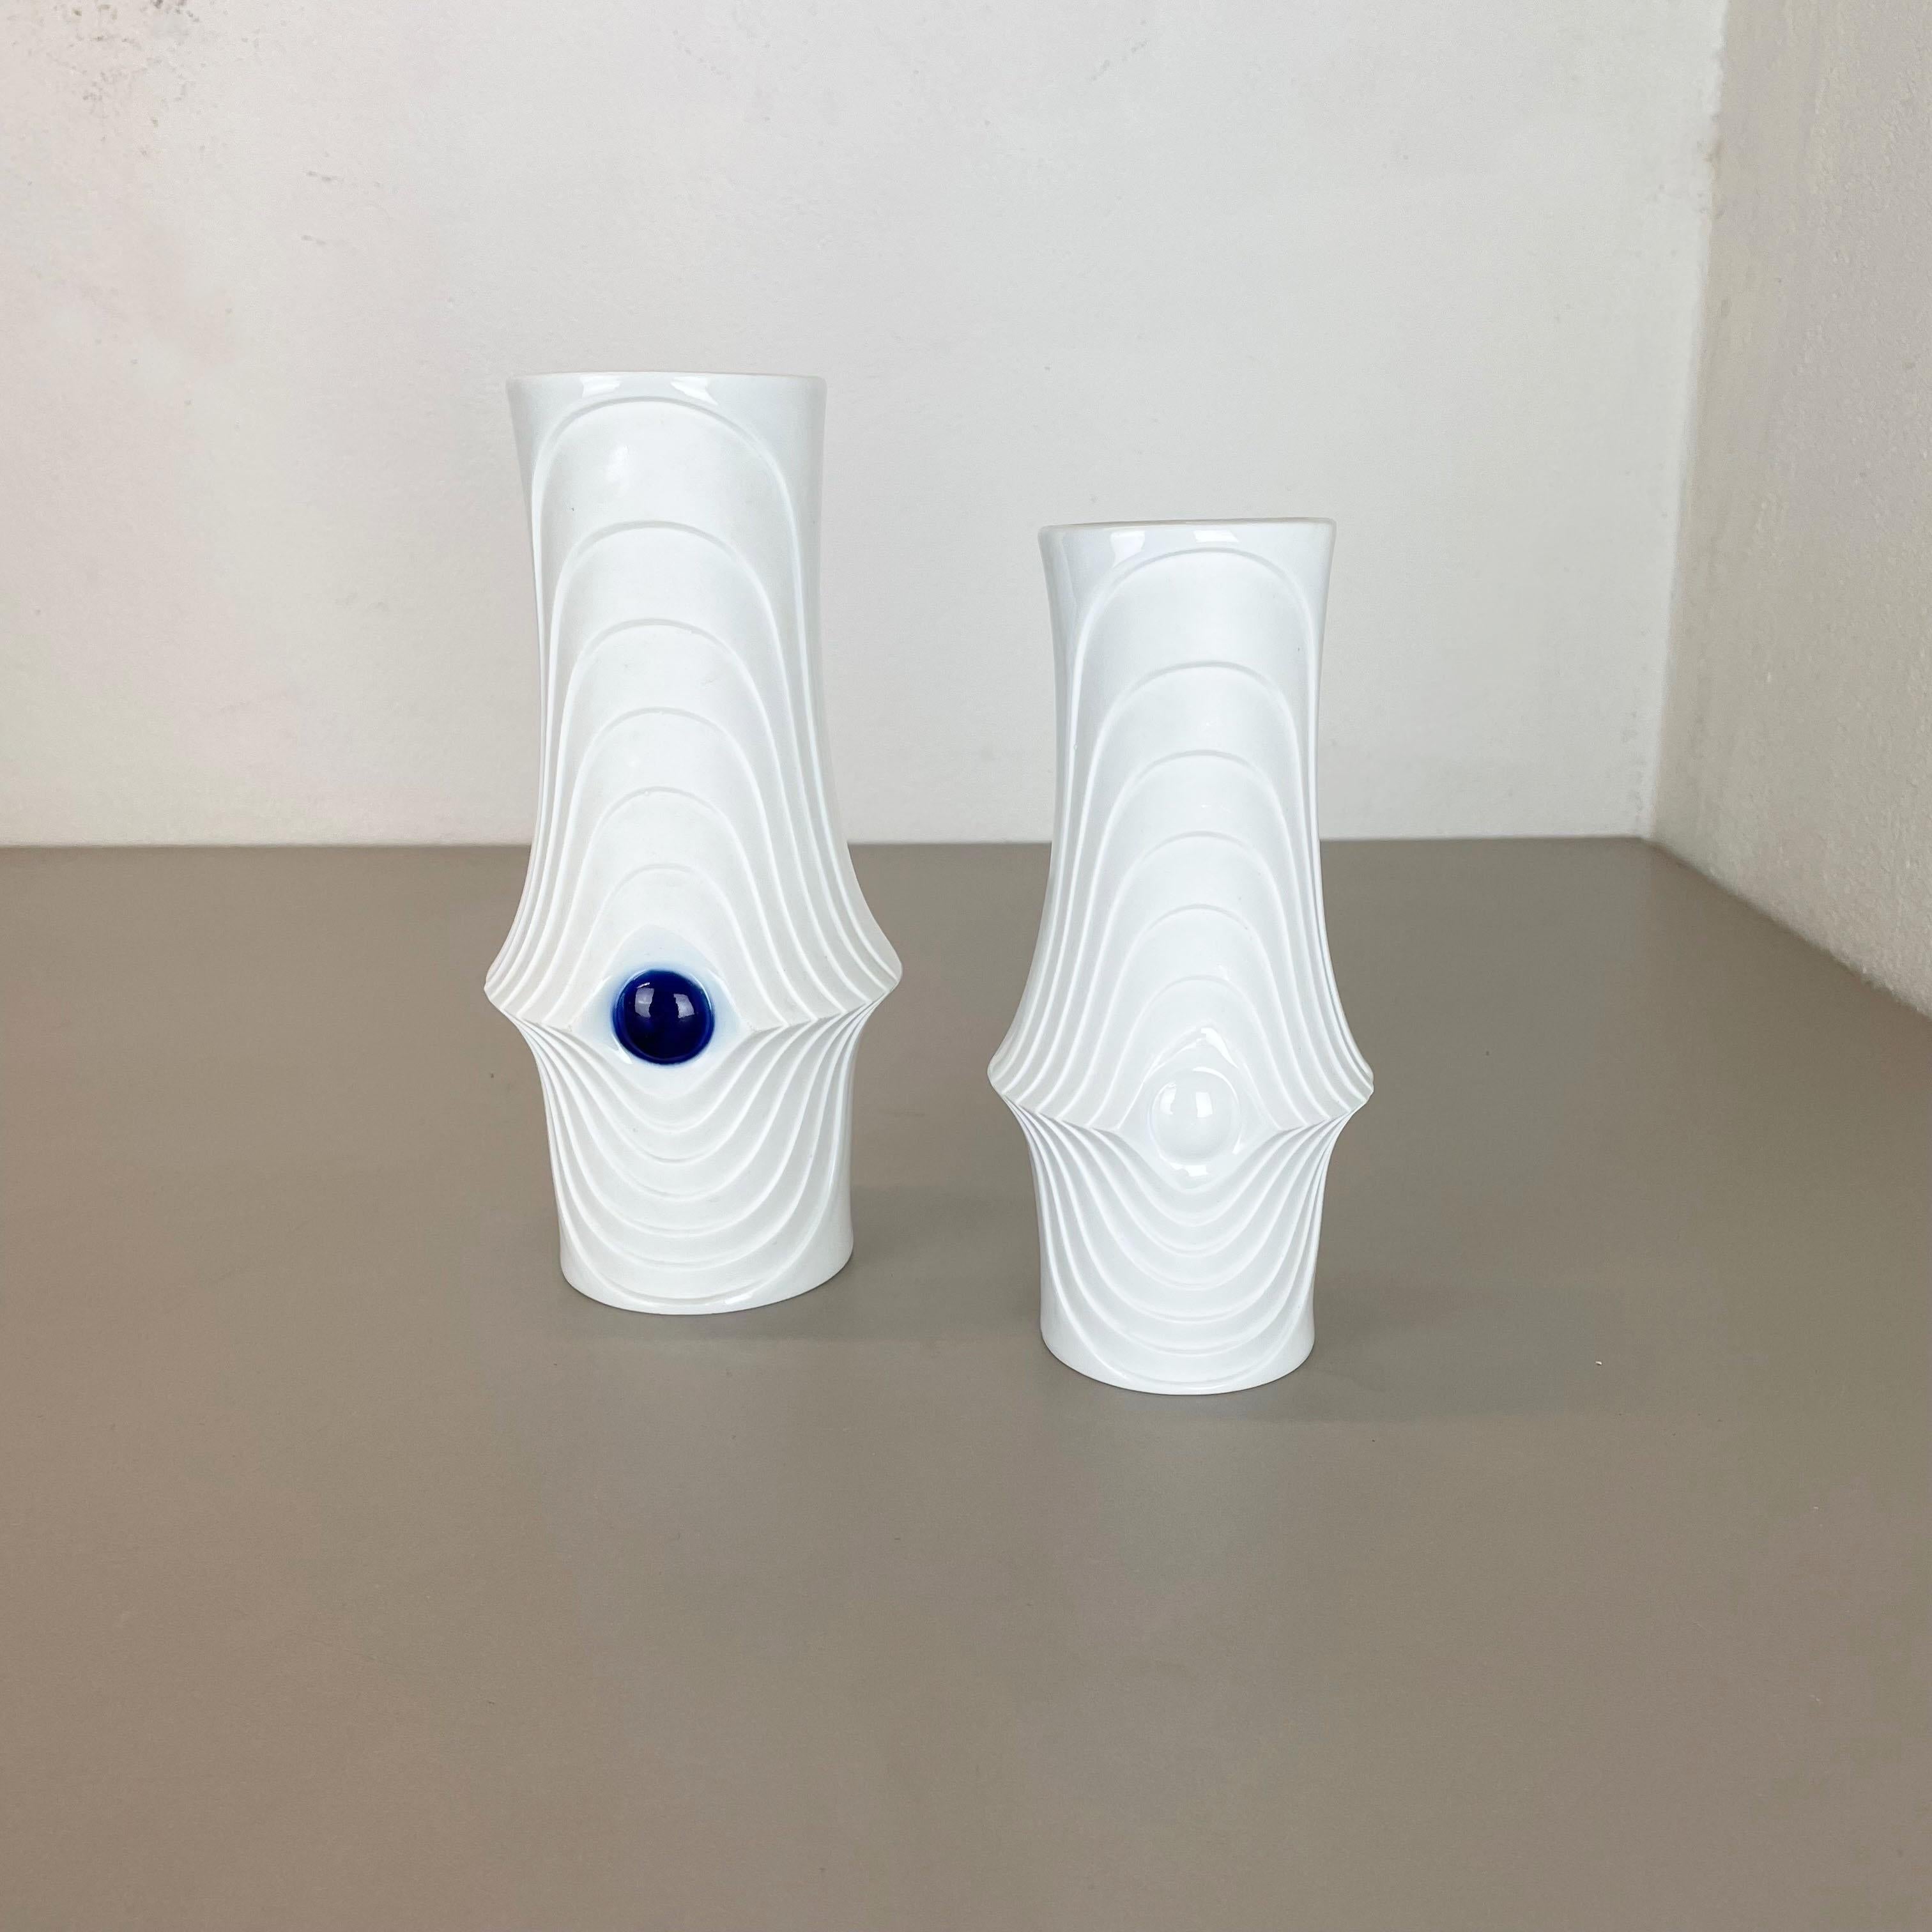 Mid-Century Modern Set of 2 Original Porcelain Op Art Vase Made by Royal Bavaria KPM Germany, 1970s For Sale